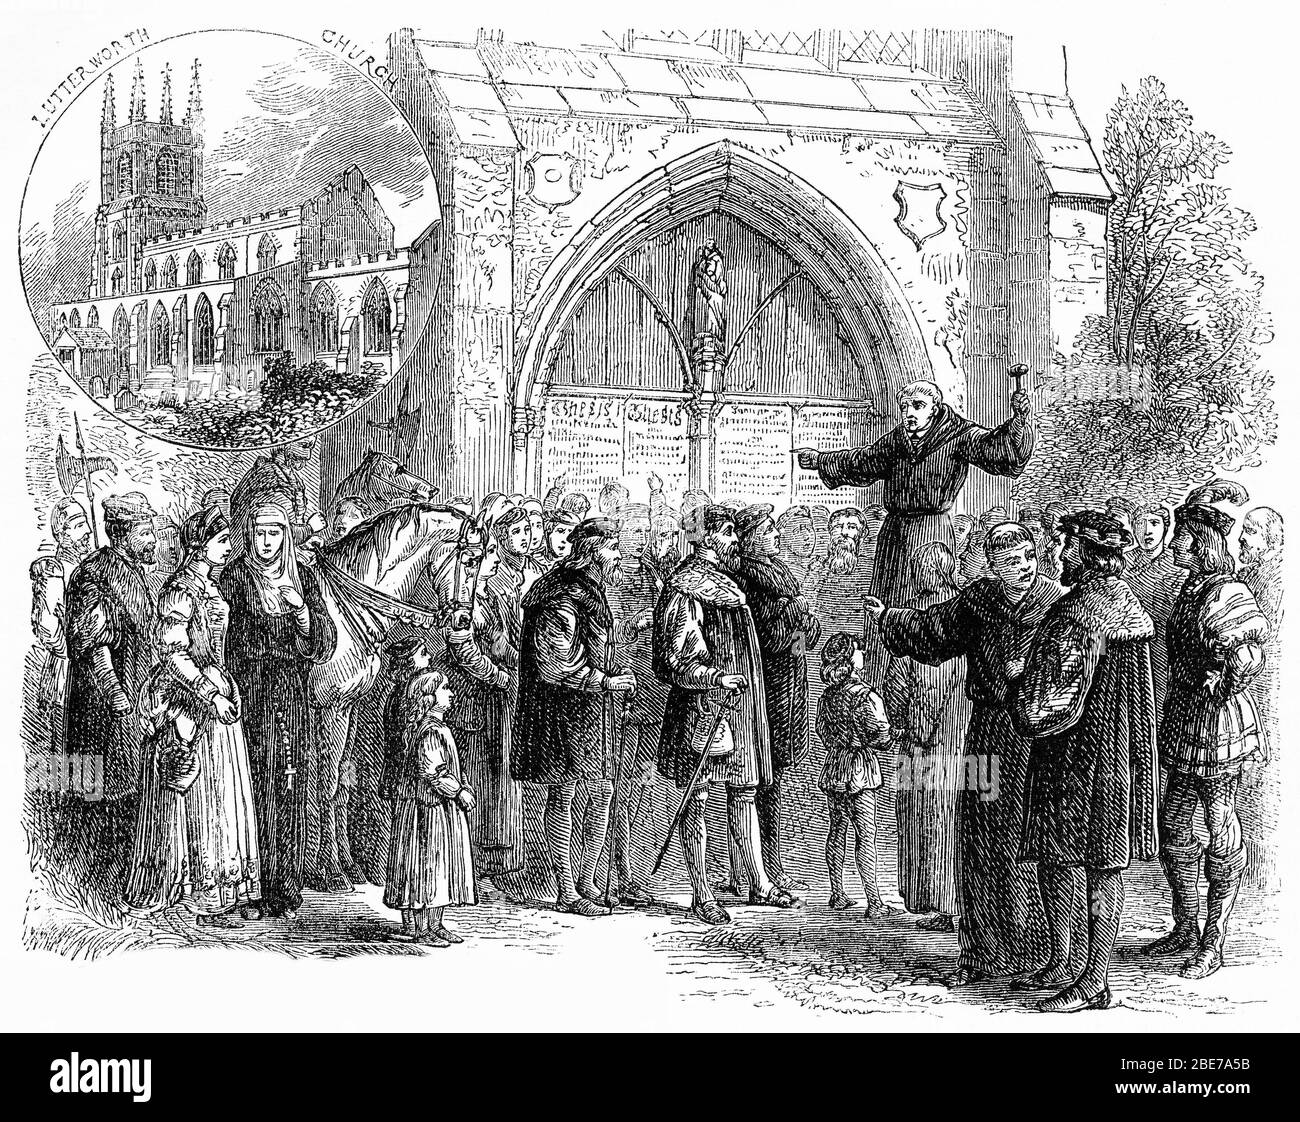 Stich von zwei Szenen aus der protestantischen Reformation - Lutterworth Kirche in England, die Pfarrei von John Wycliffe und John Tetzel Verkauf Ablässe in Deutschland Stockfoto